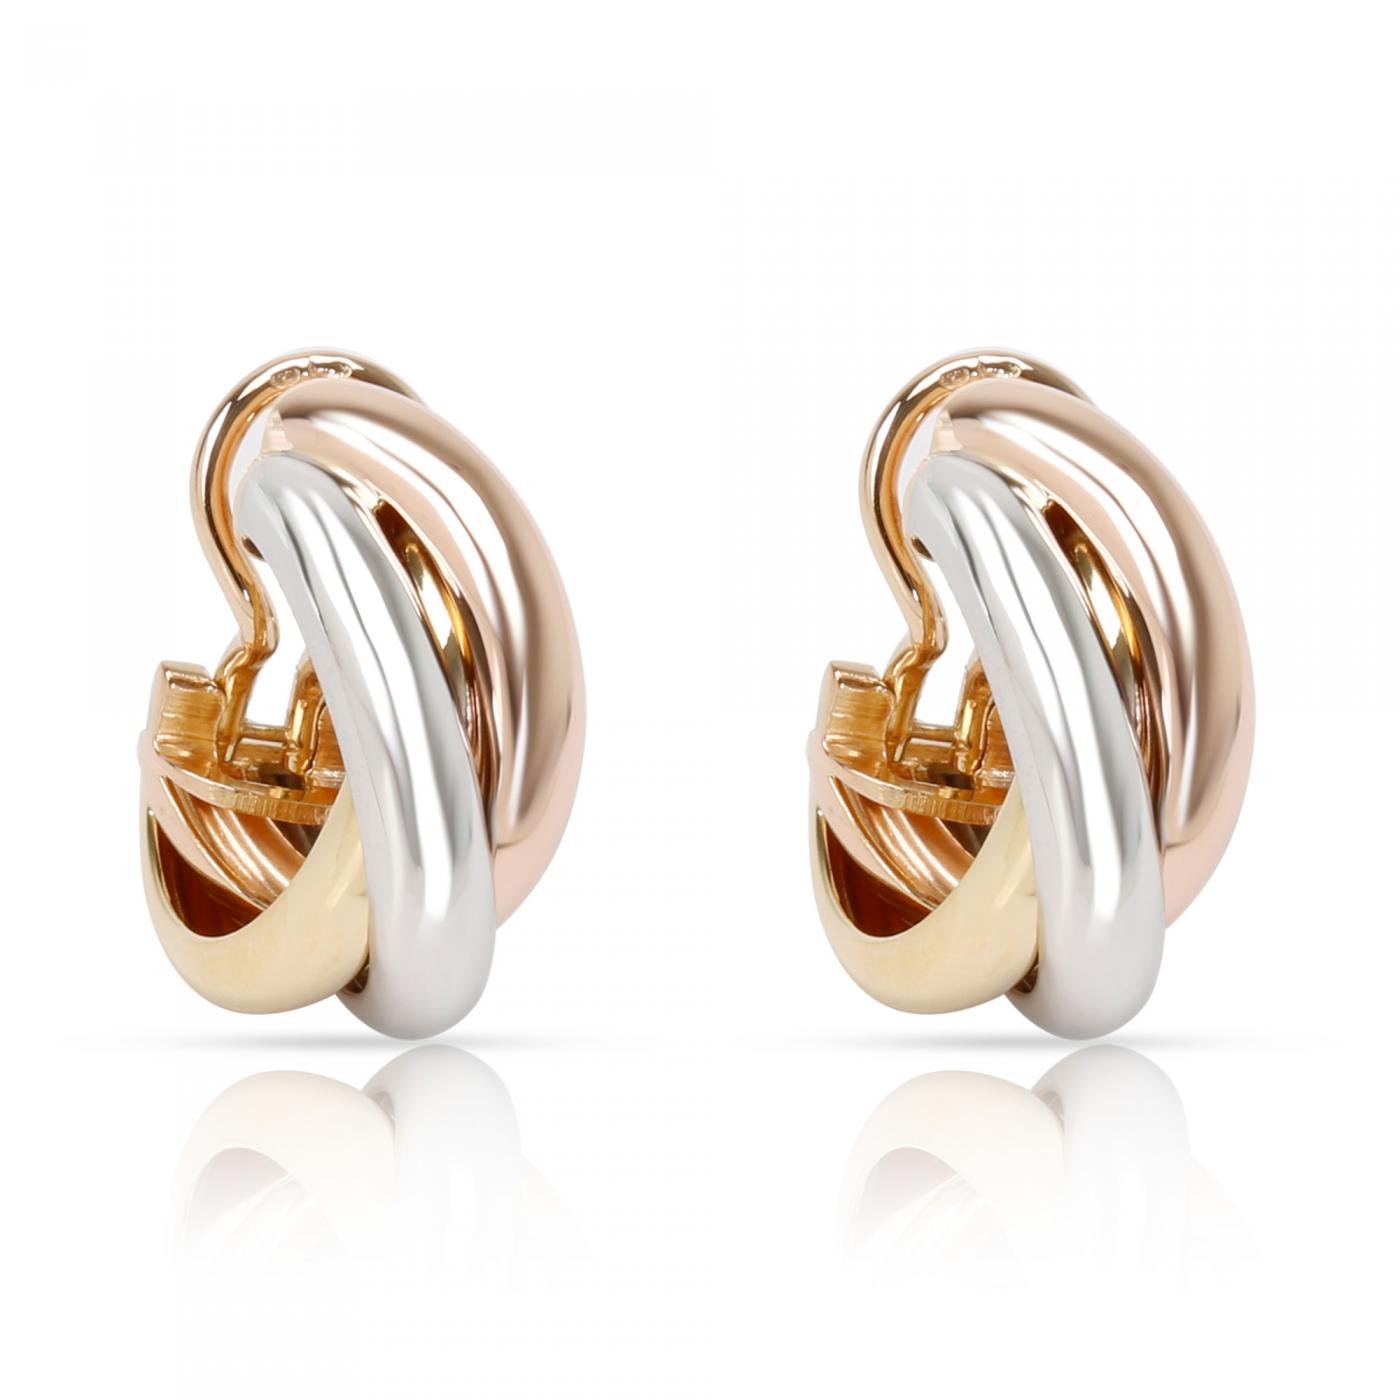 Cartier Trinity Earrings in 18K 3 Tone Gold